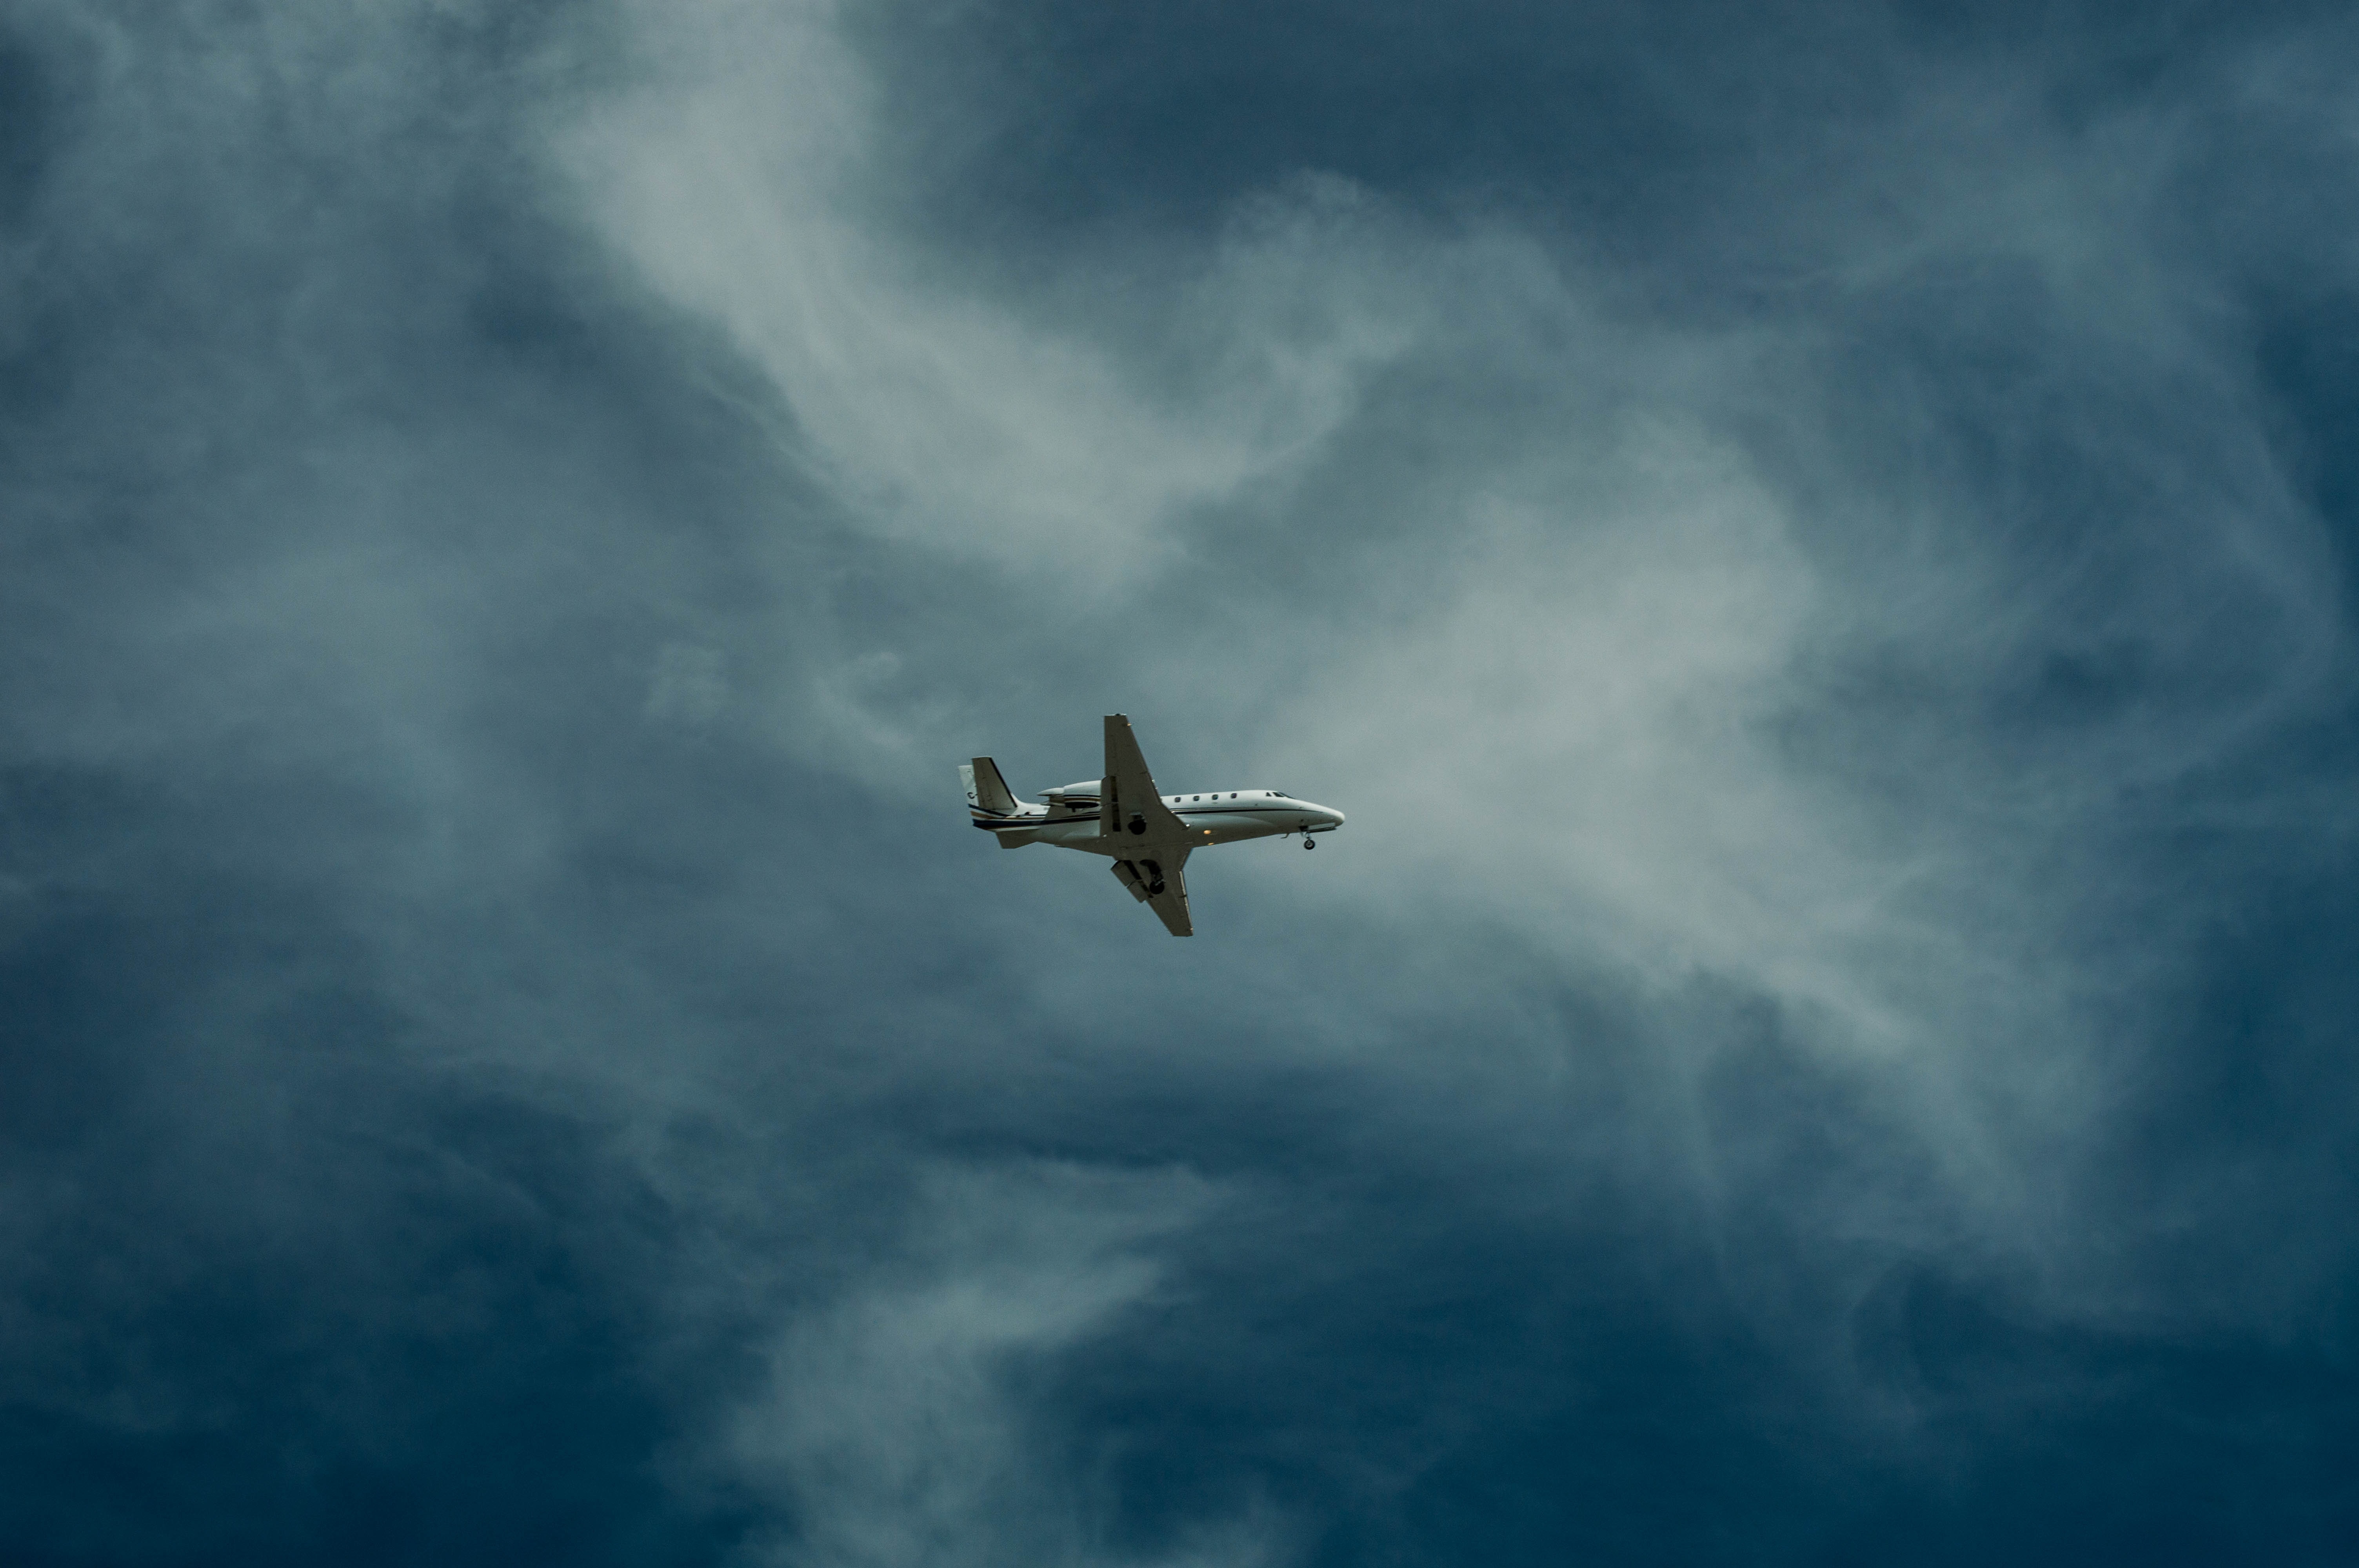 Самолет находящийся в полете преодолевает 85 метров. Самолет в небе. Cfvjktn DF yt,t. Обои самолет. Cfvjk`n d uyt,r.